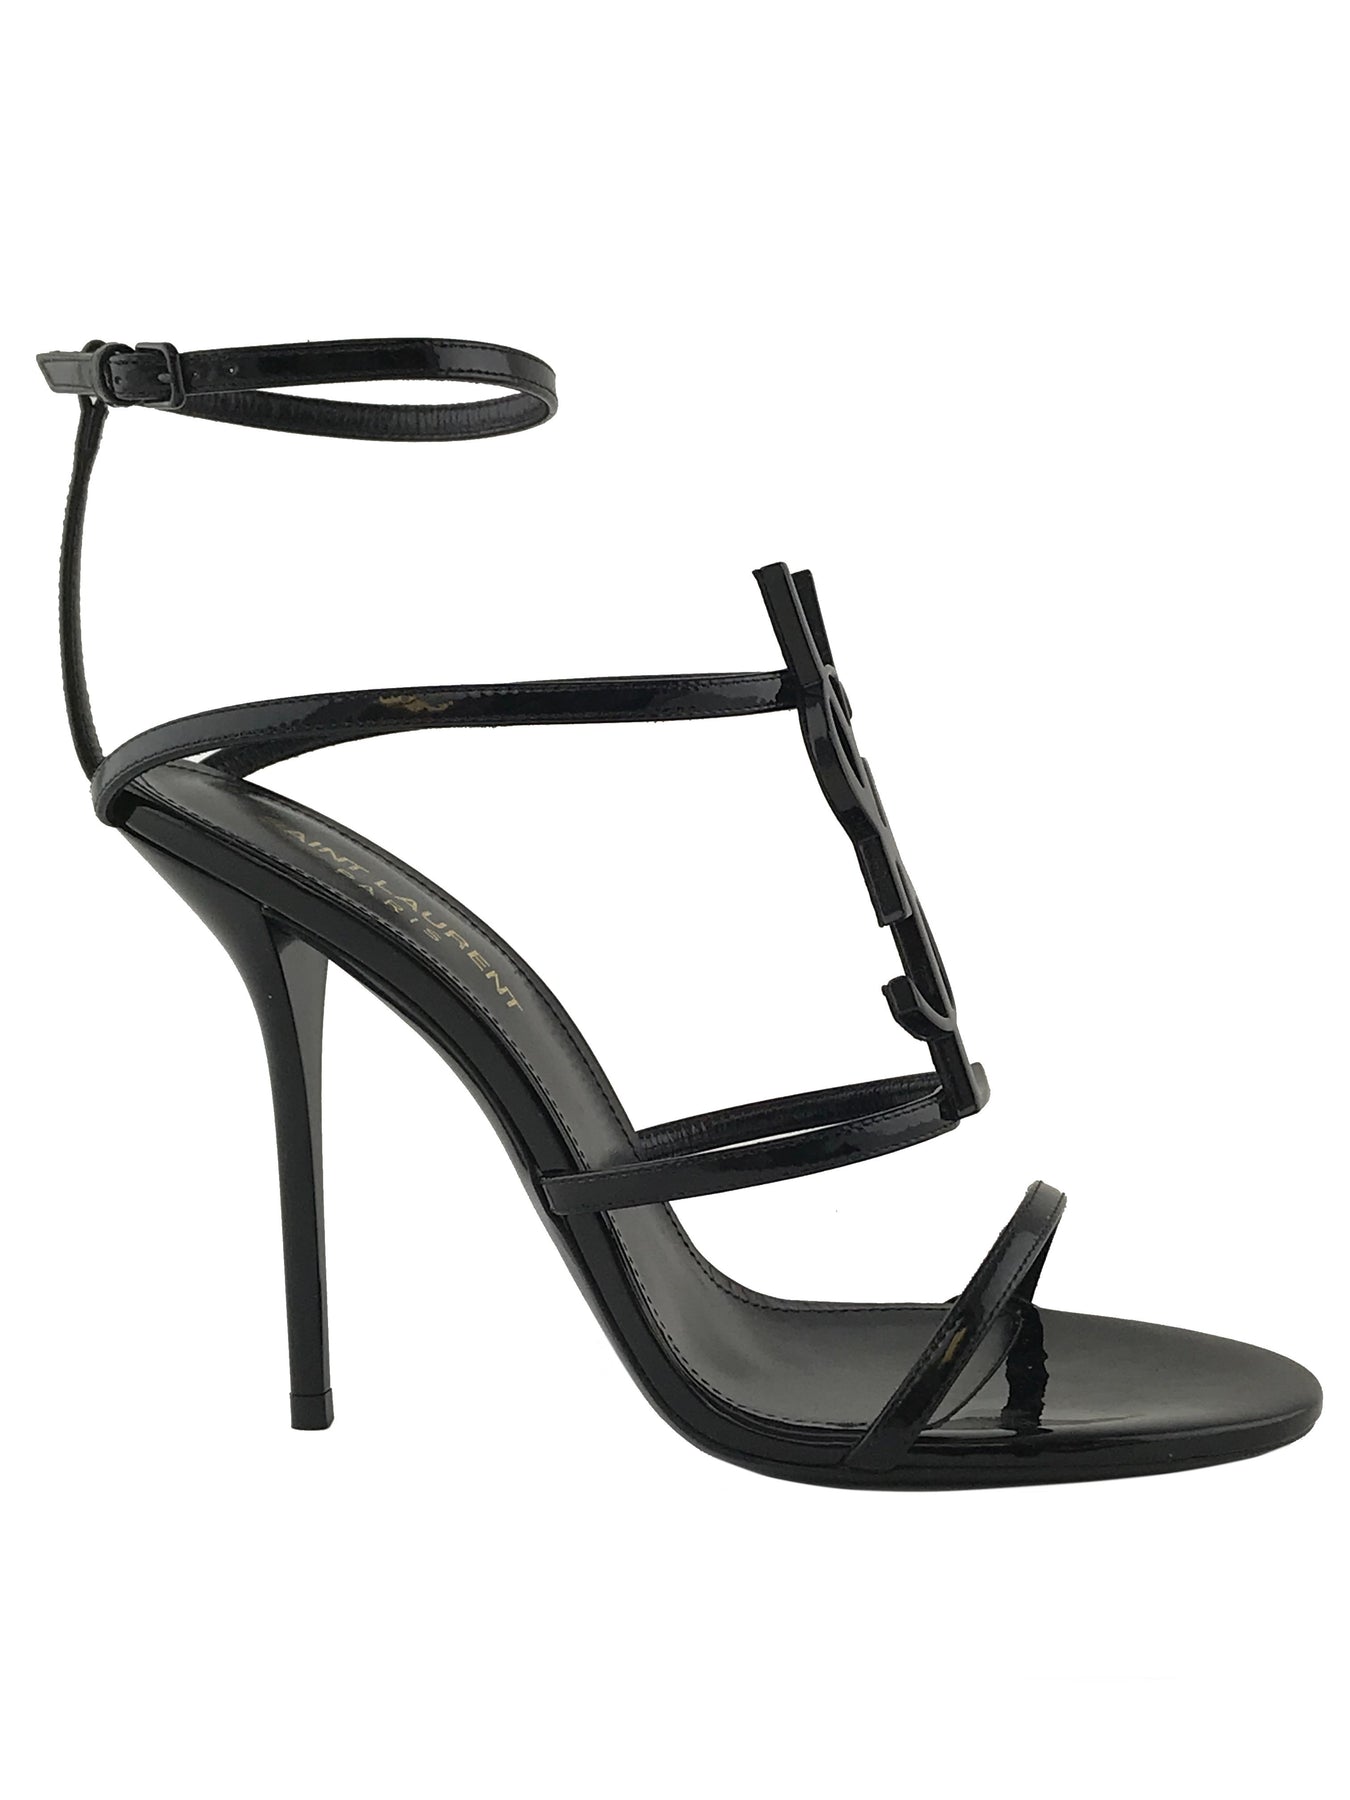 Saint Laurent Cassandra Leather Stiletto Sandals Size 7.5 - Consigned ...